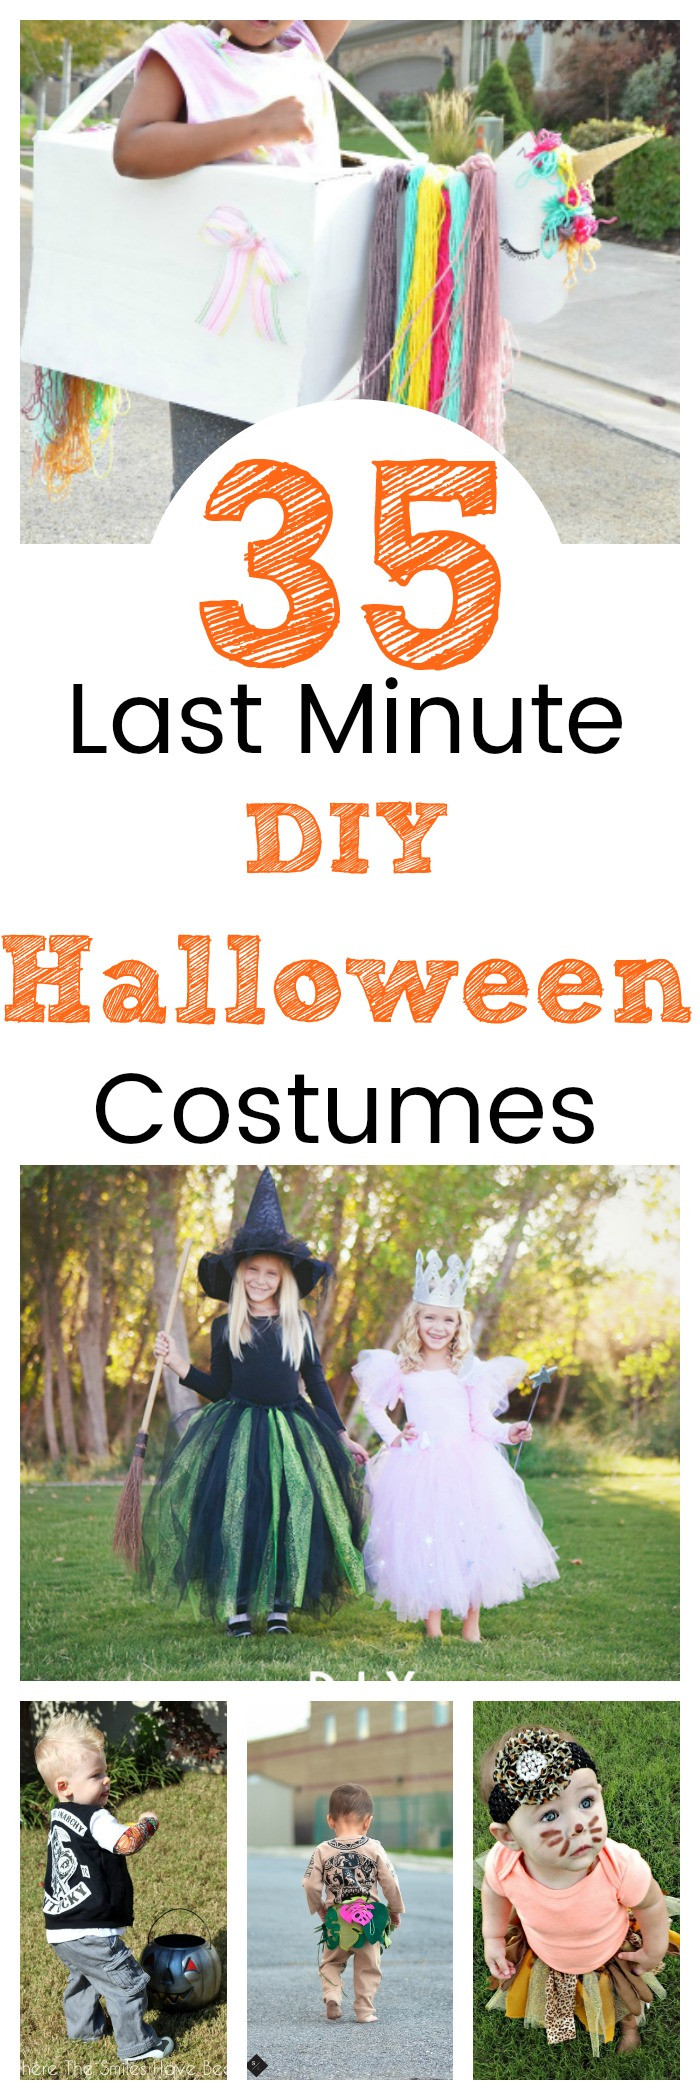 DIY Halloween Costumes Last Minute
 35 Last Minute DIY Halloween Costumes